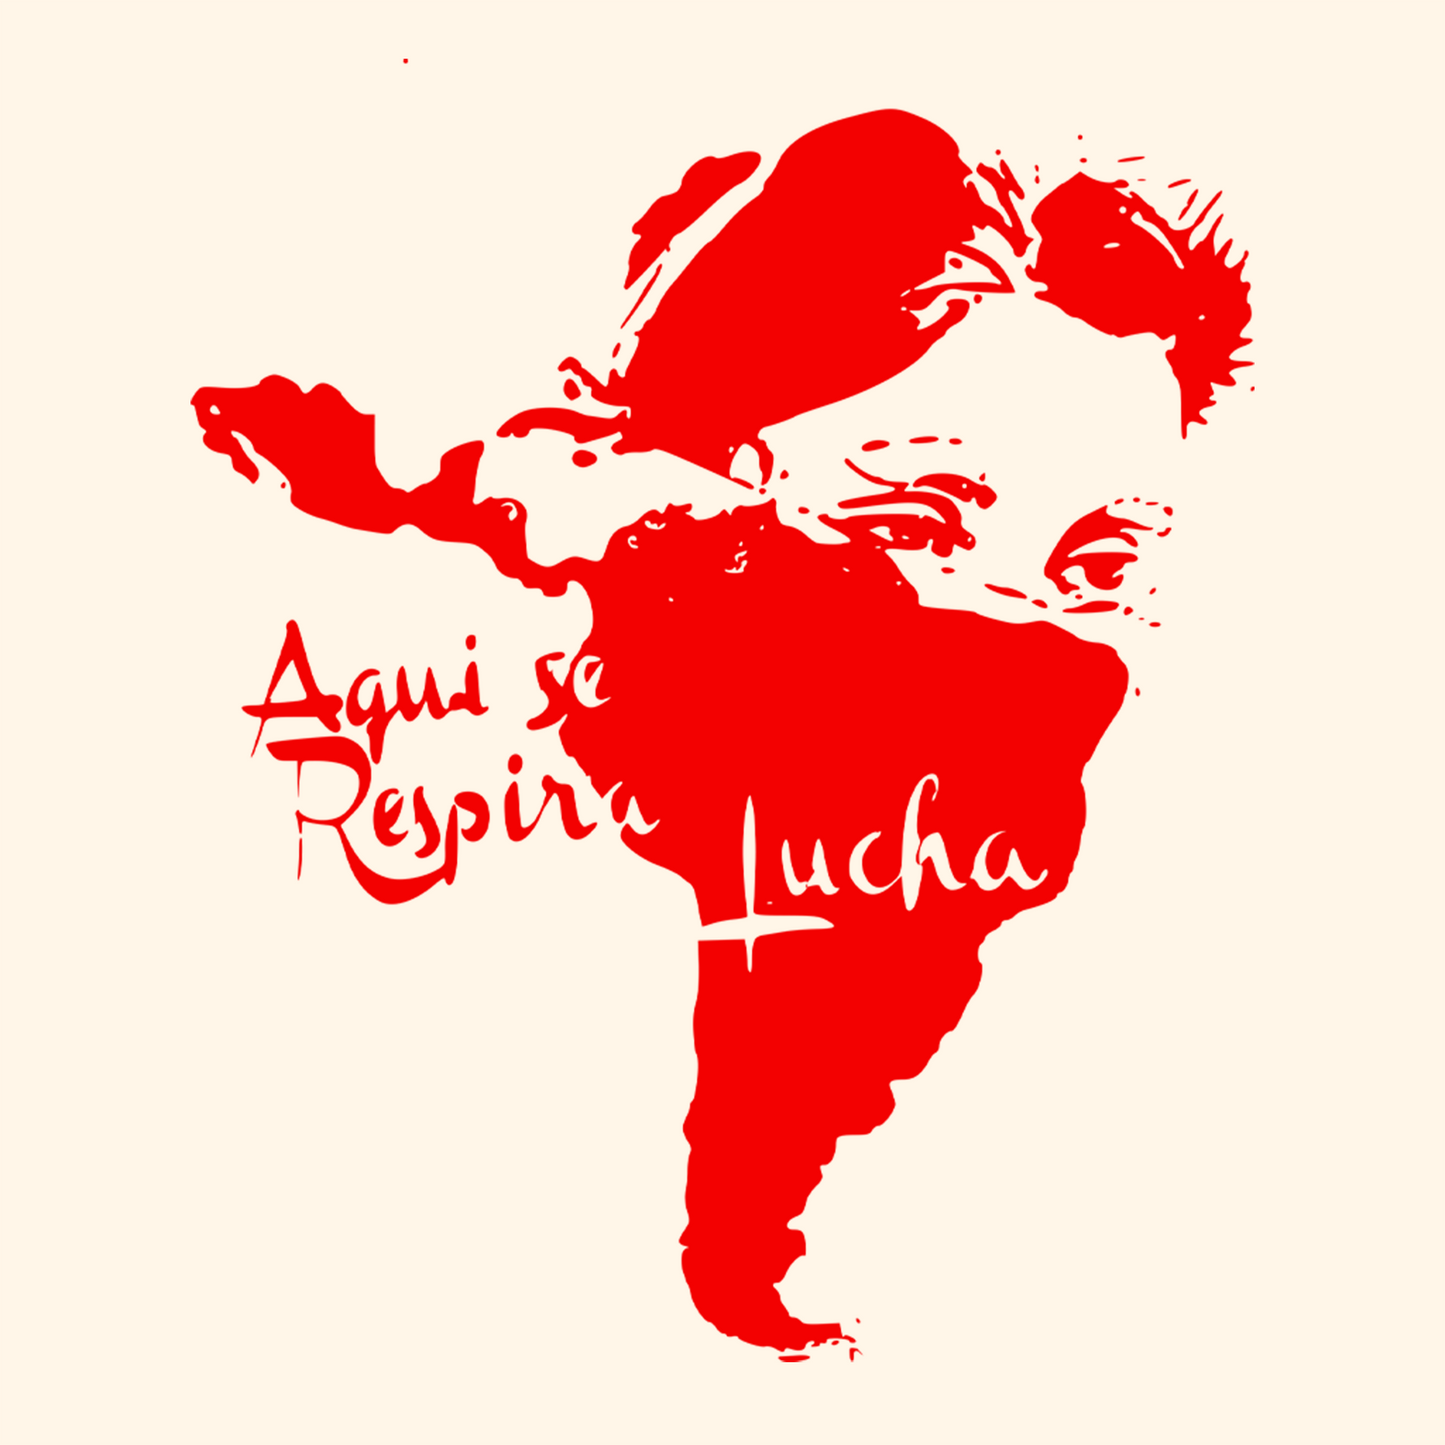 Mapa da América Latina em formato de cara de mulher com lenço no rosto. Ao lado recorte da música Latinoamerica: Aqui se respira lucha.